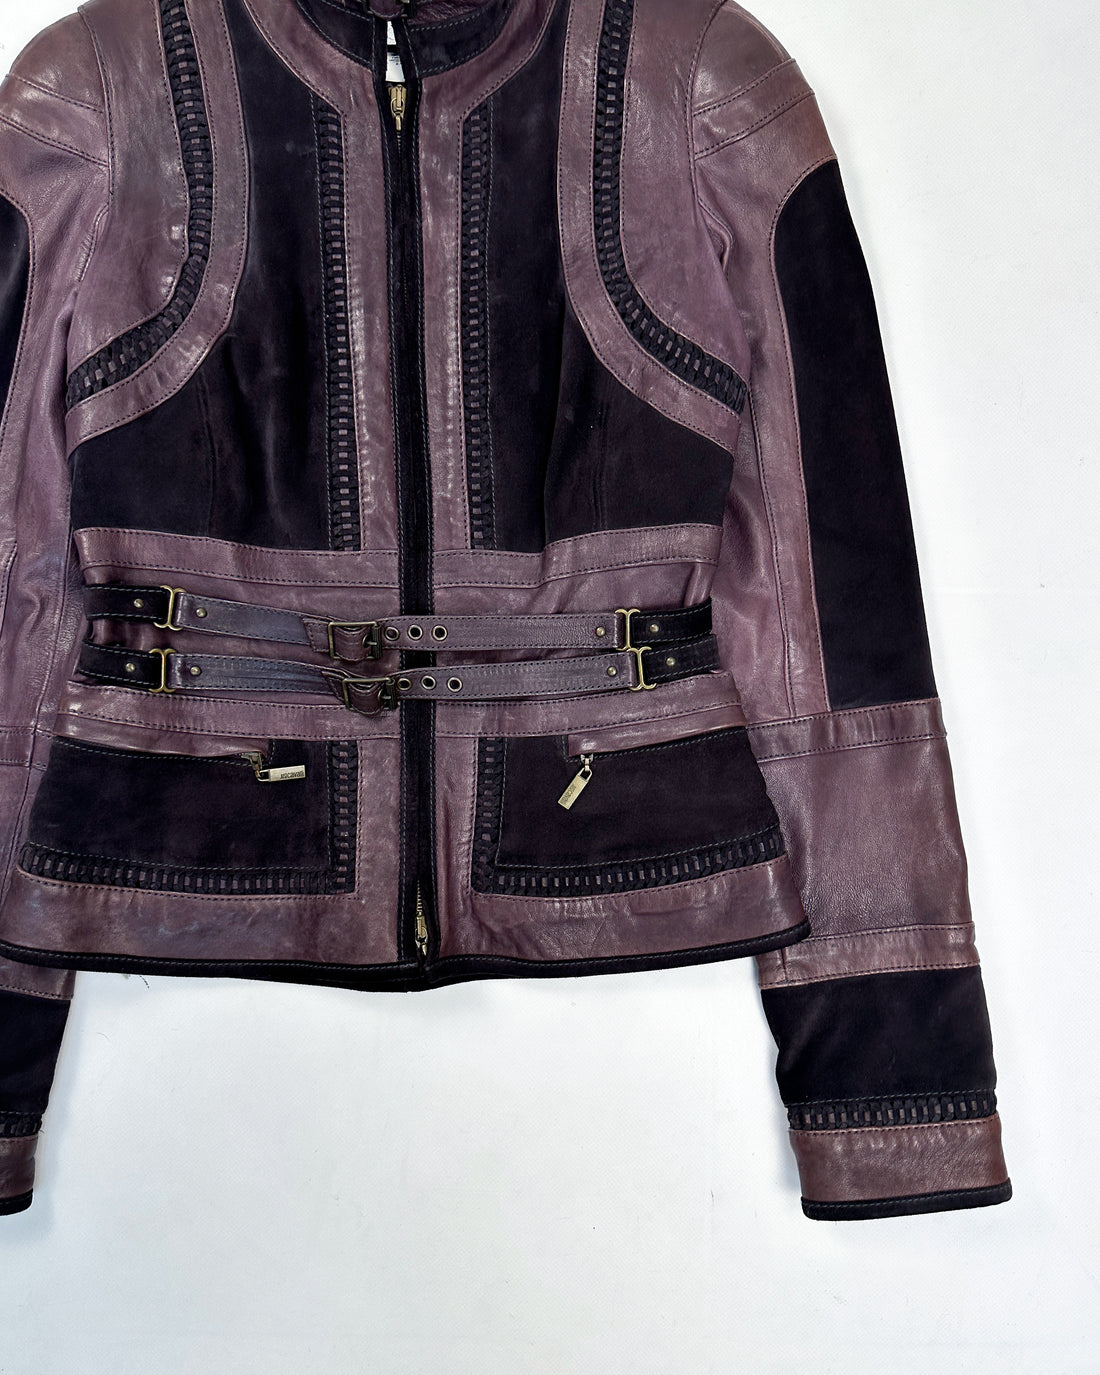 Just Cavalli Braided Dark Purple Leather Jacket FW 2005